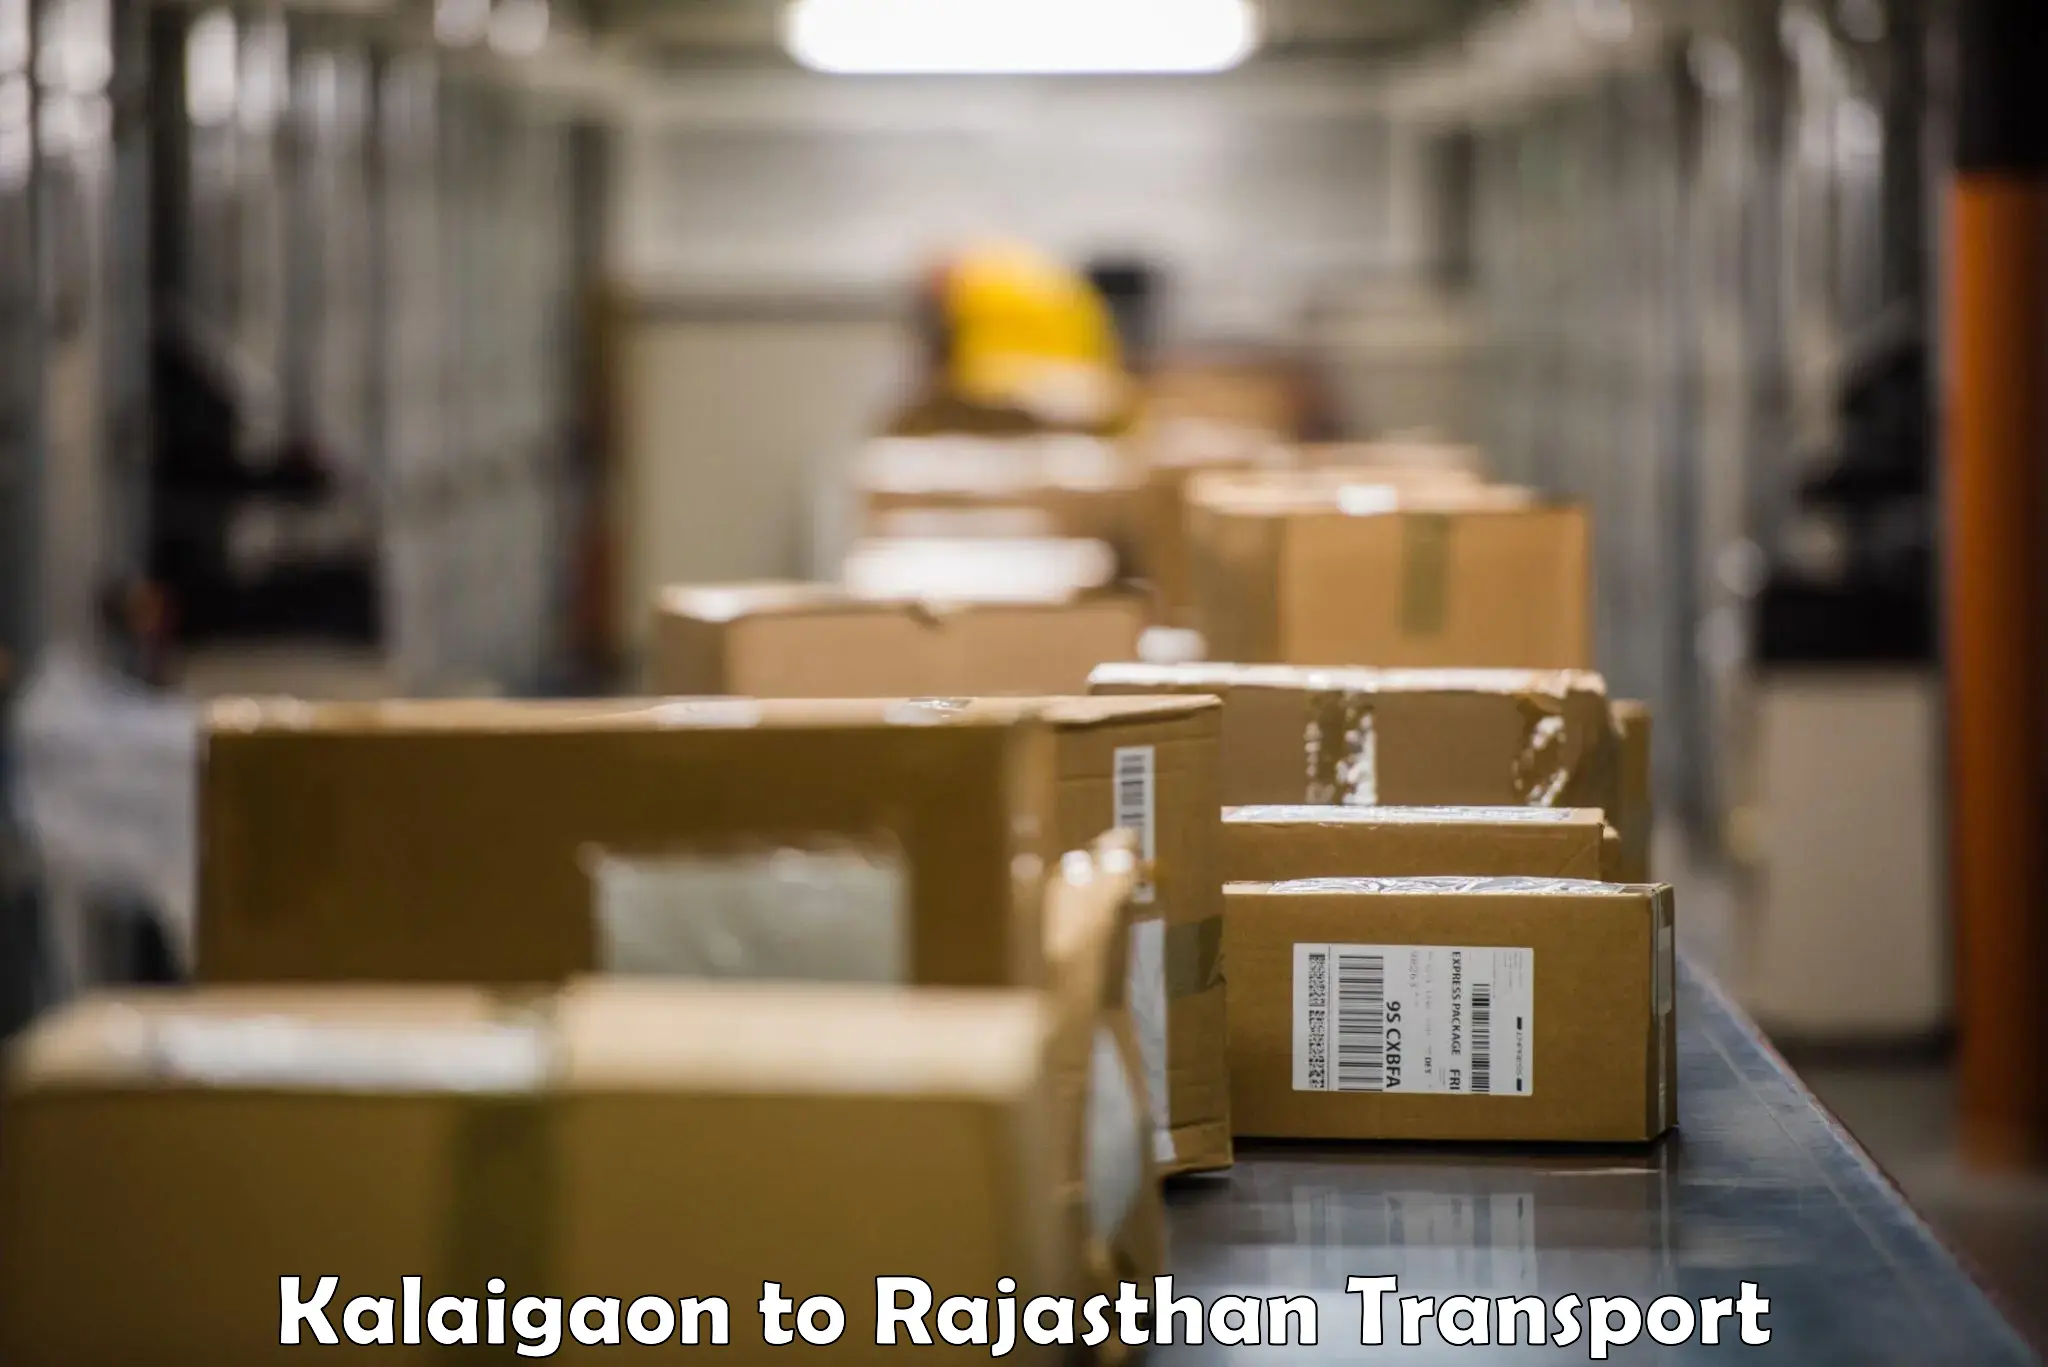 Cargo transportation services Kalaigaon to Kalwar